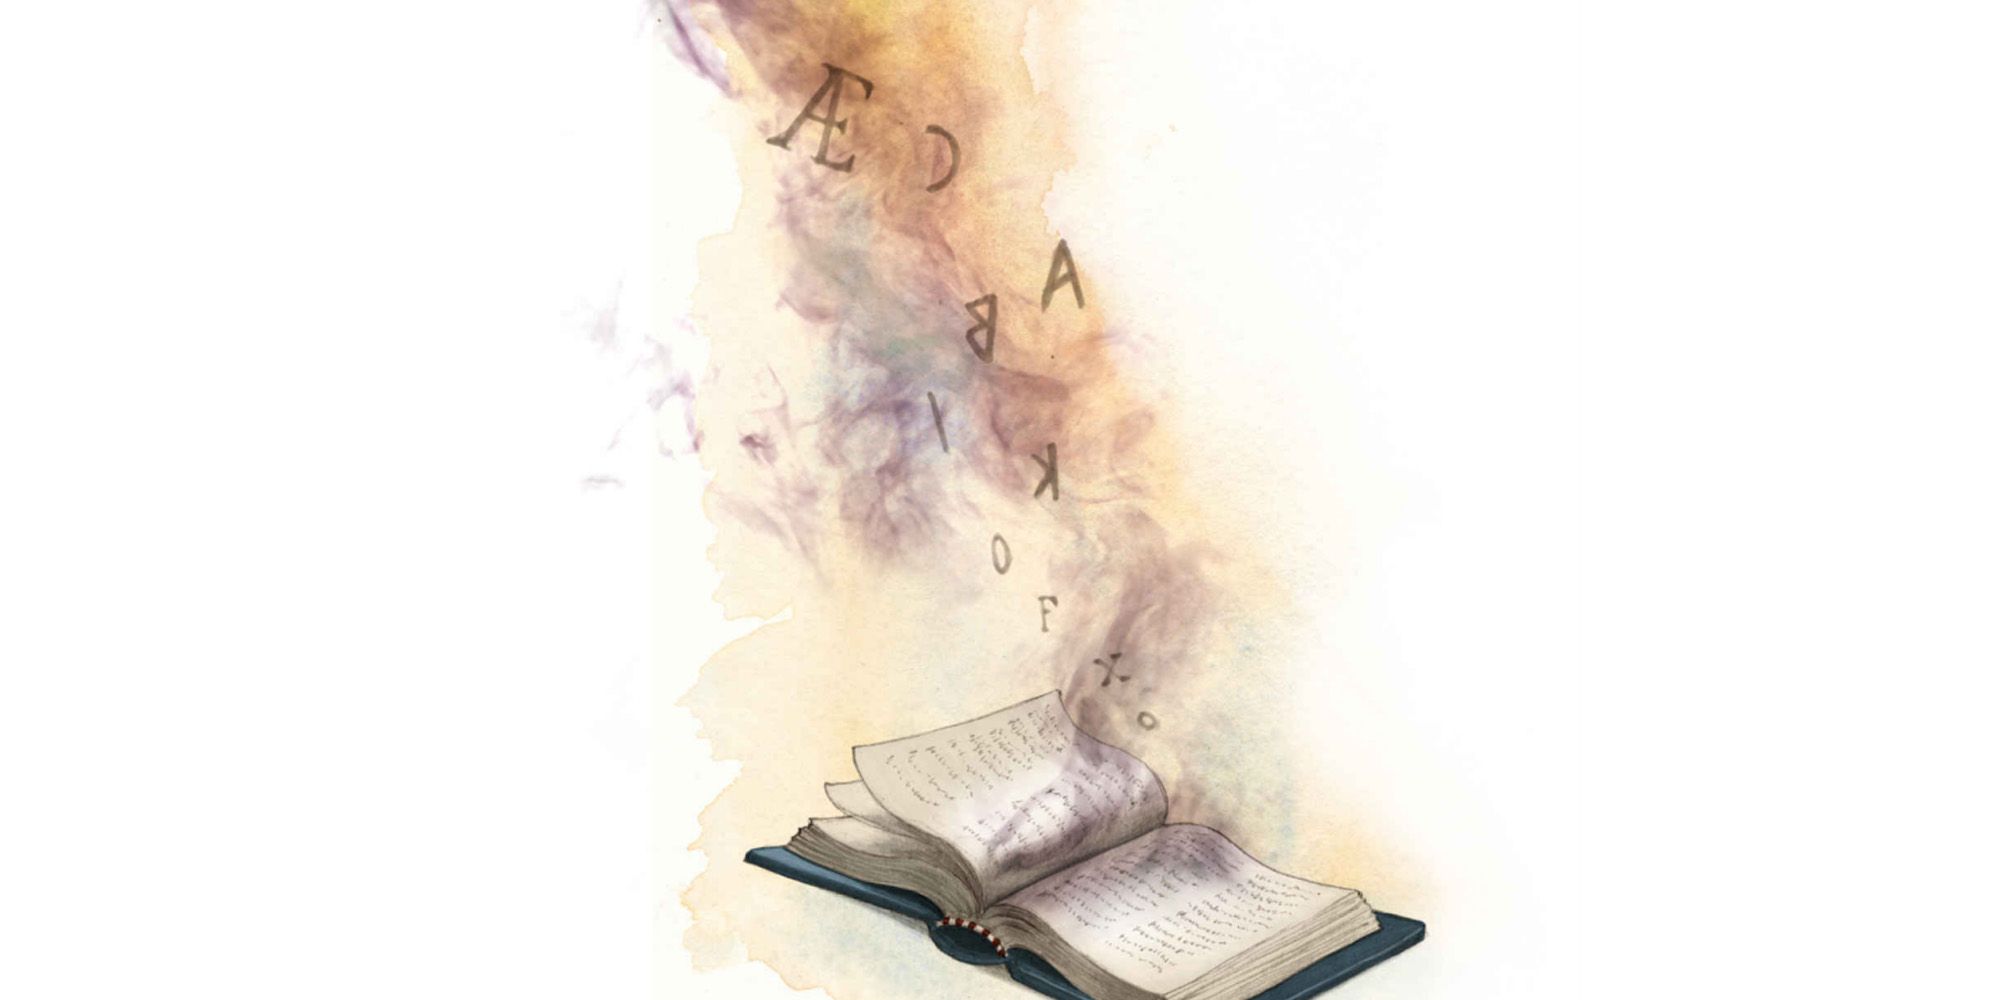 Percy Jackson Illustrated, Dyslexia